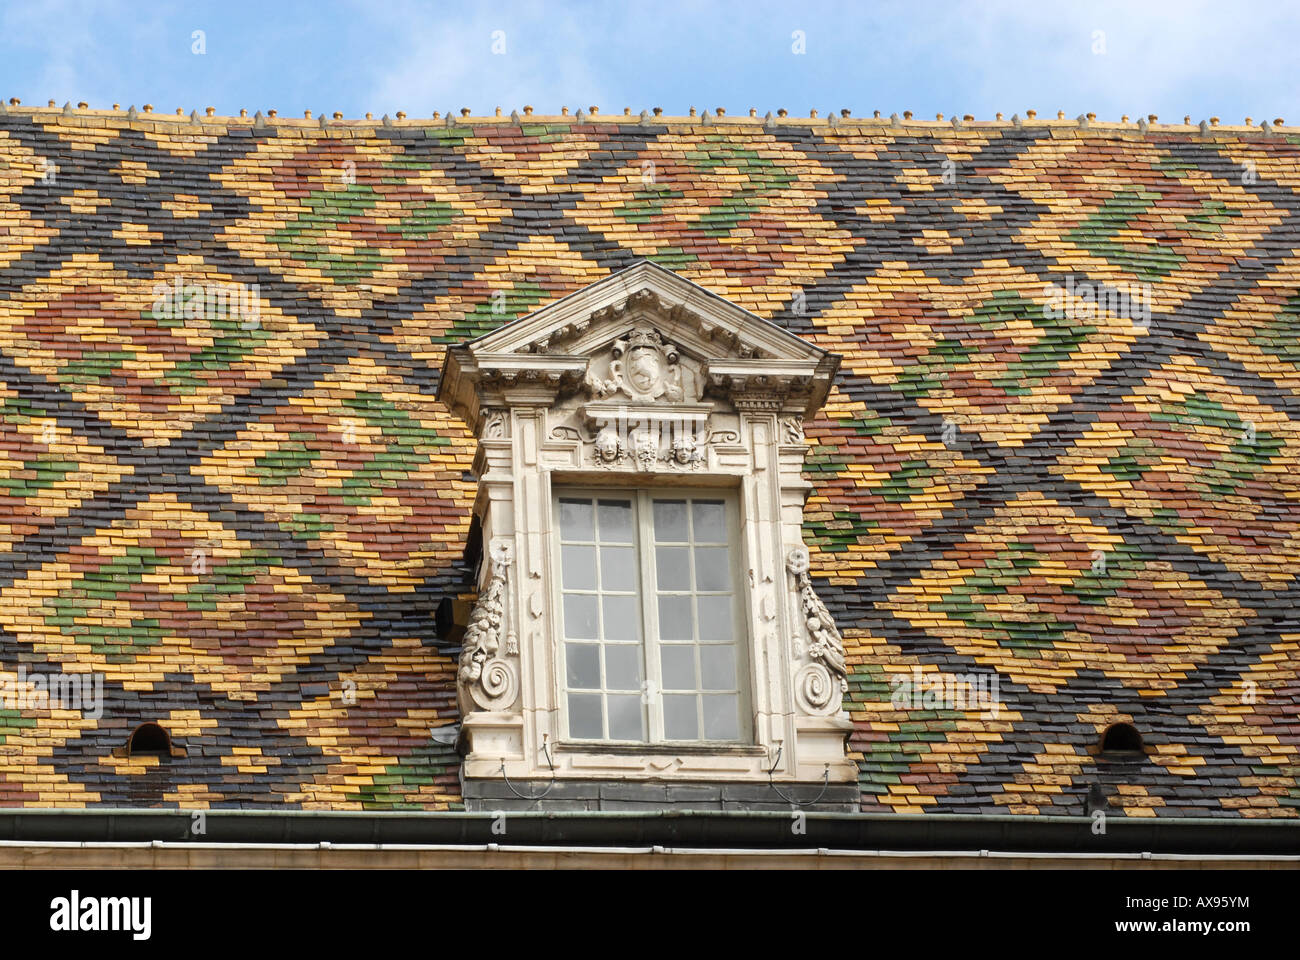 Toit à tuiles vernissées typiques à Dijon, Bourgogne, France. Banque D'Images